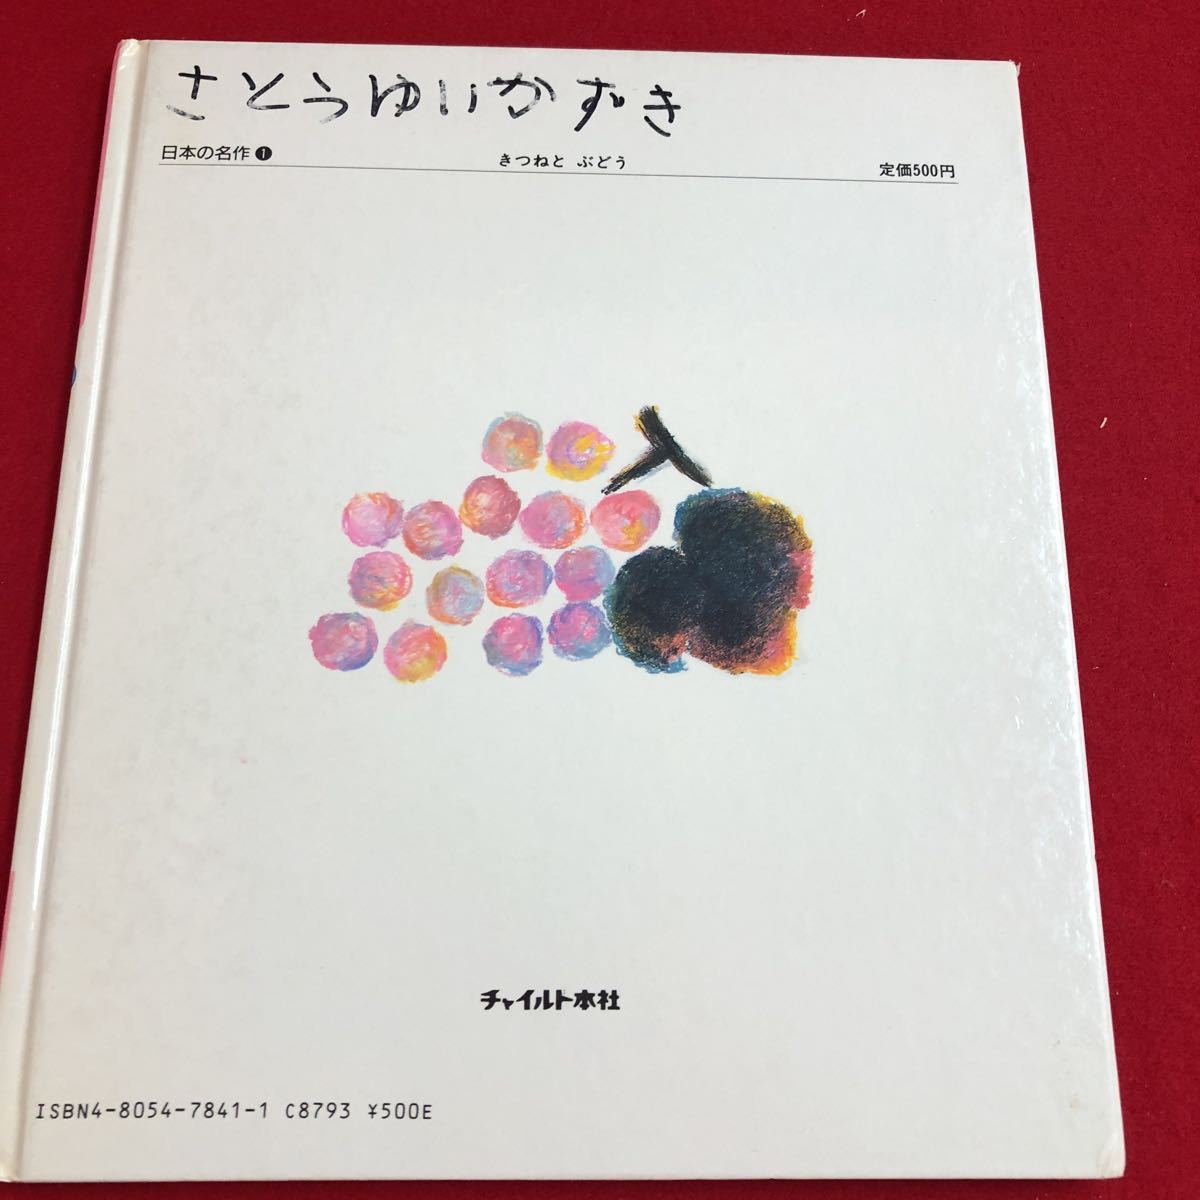 M6g-244 チャイルド絵本館1 日本の名作 きつねと ぶどう ひとつ やま ふたつ くわえて こえ 1988年4月1日 第1刷発行_書き込みあり